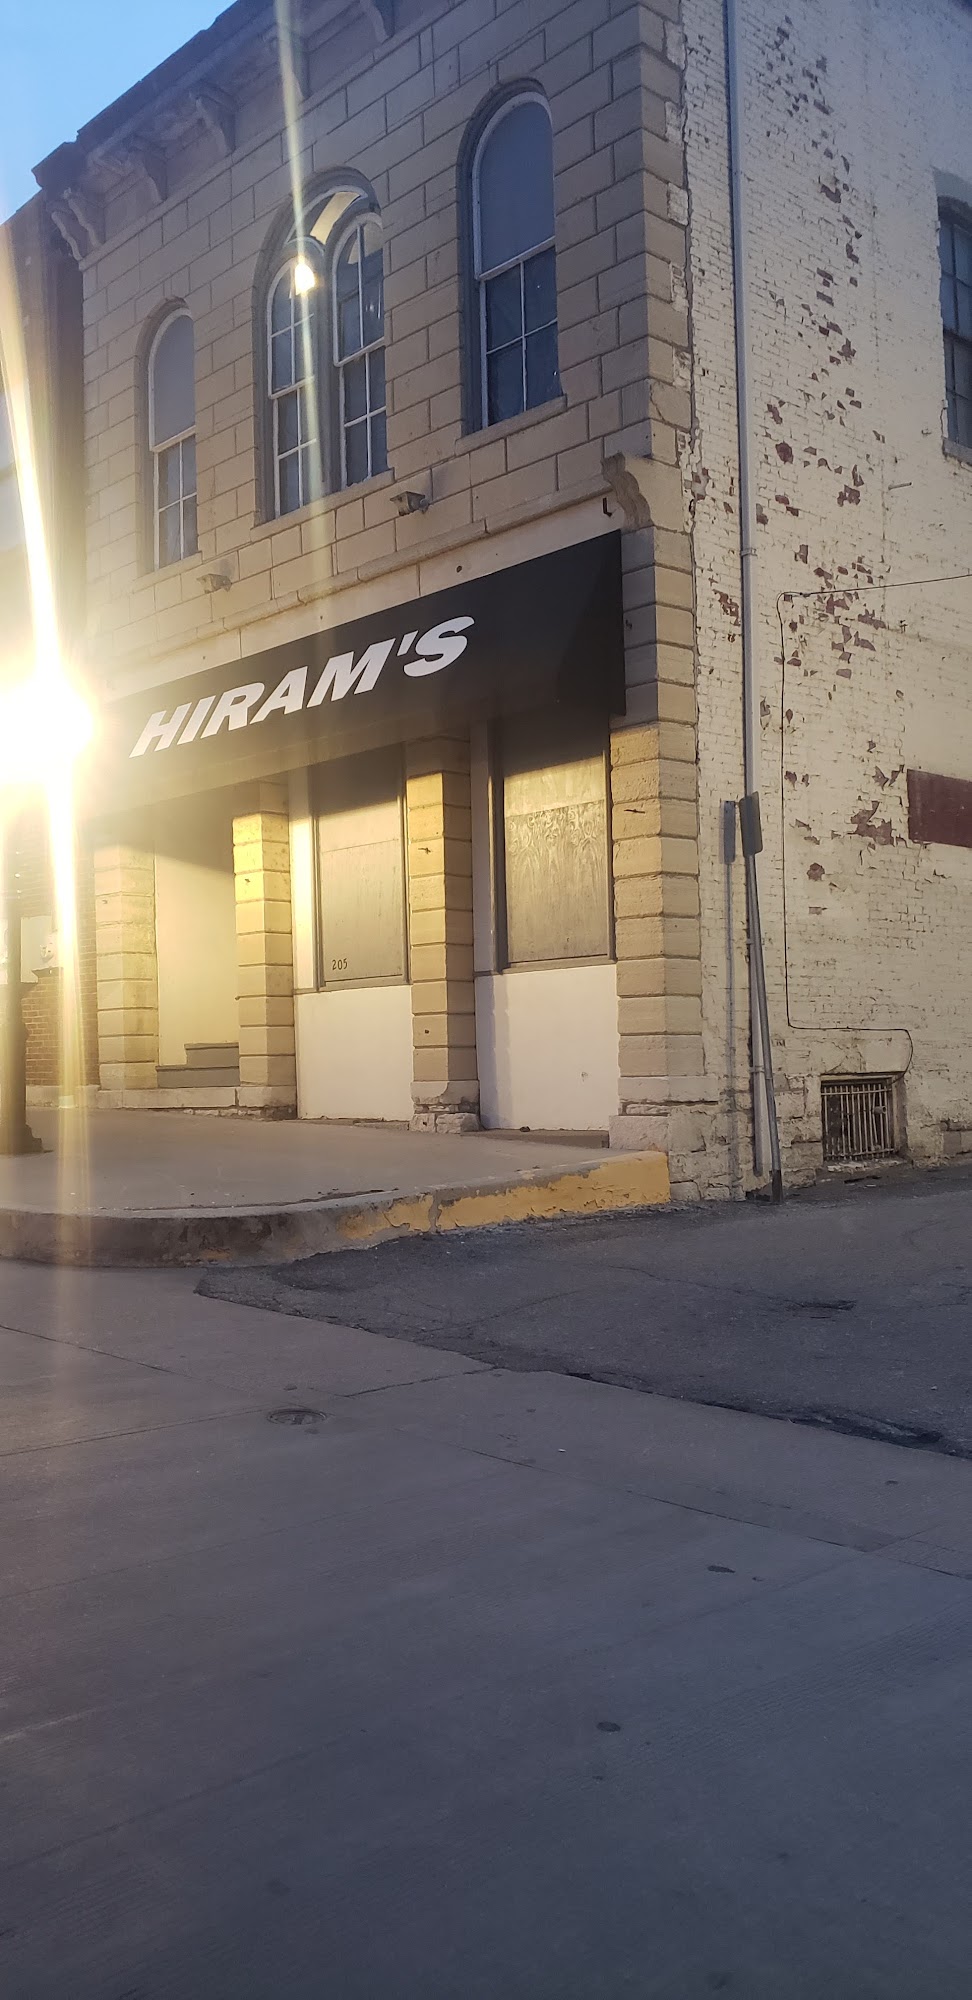 Hiram's Bar